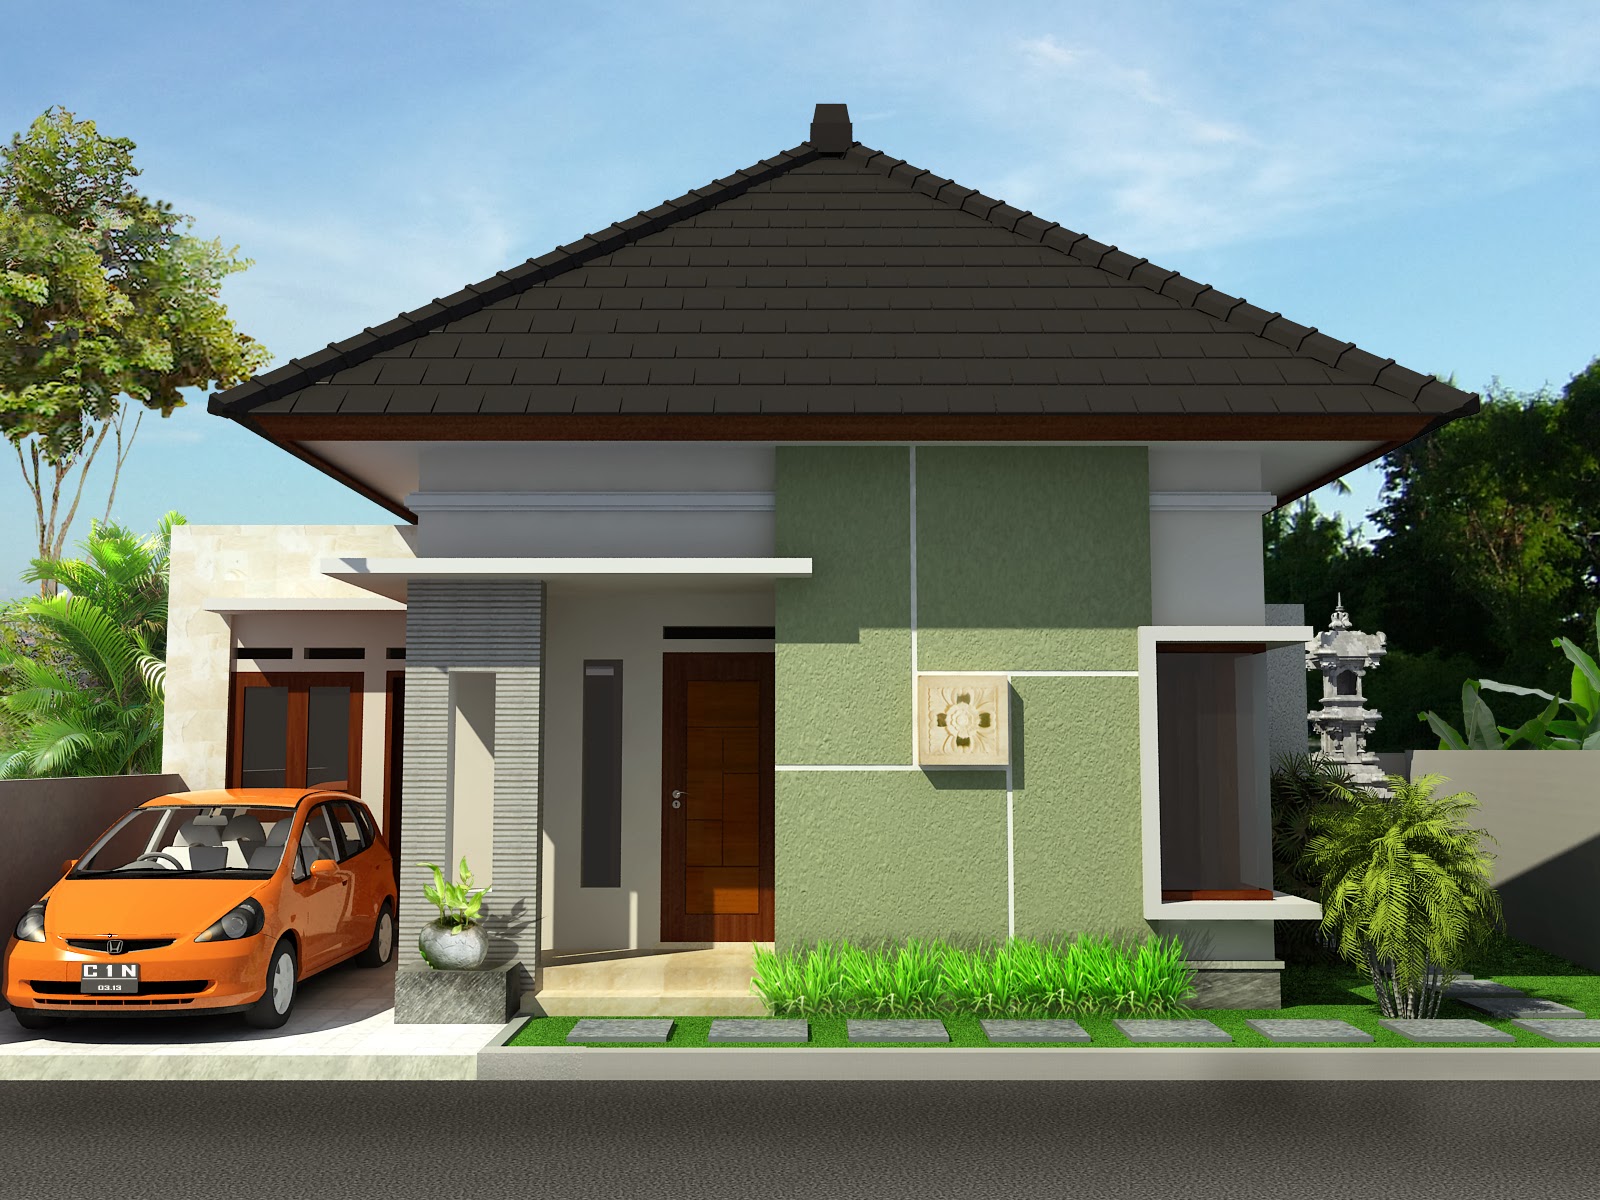 Desain Rumah Minimalis Style Bali Desain Rumah Minimalis Terbaru